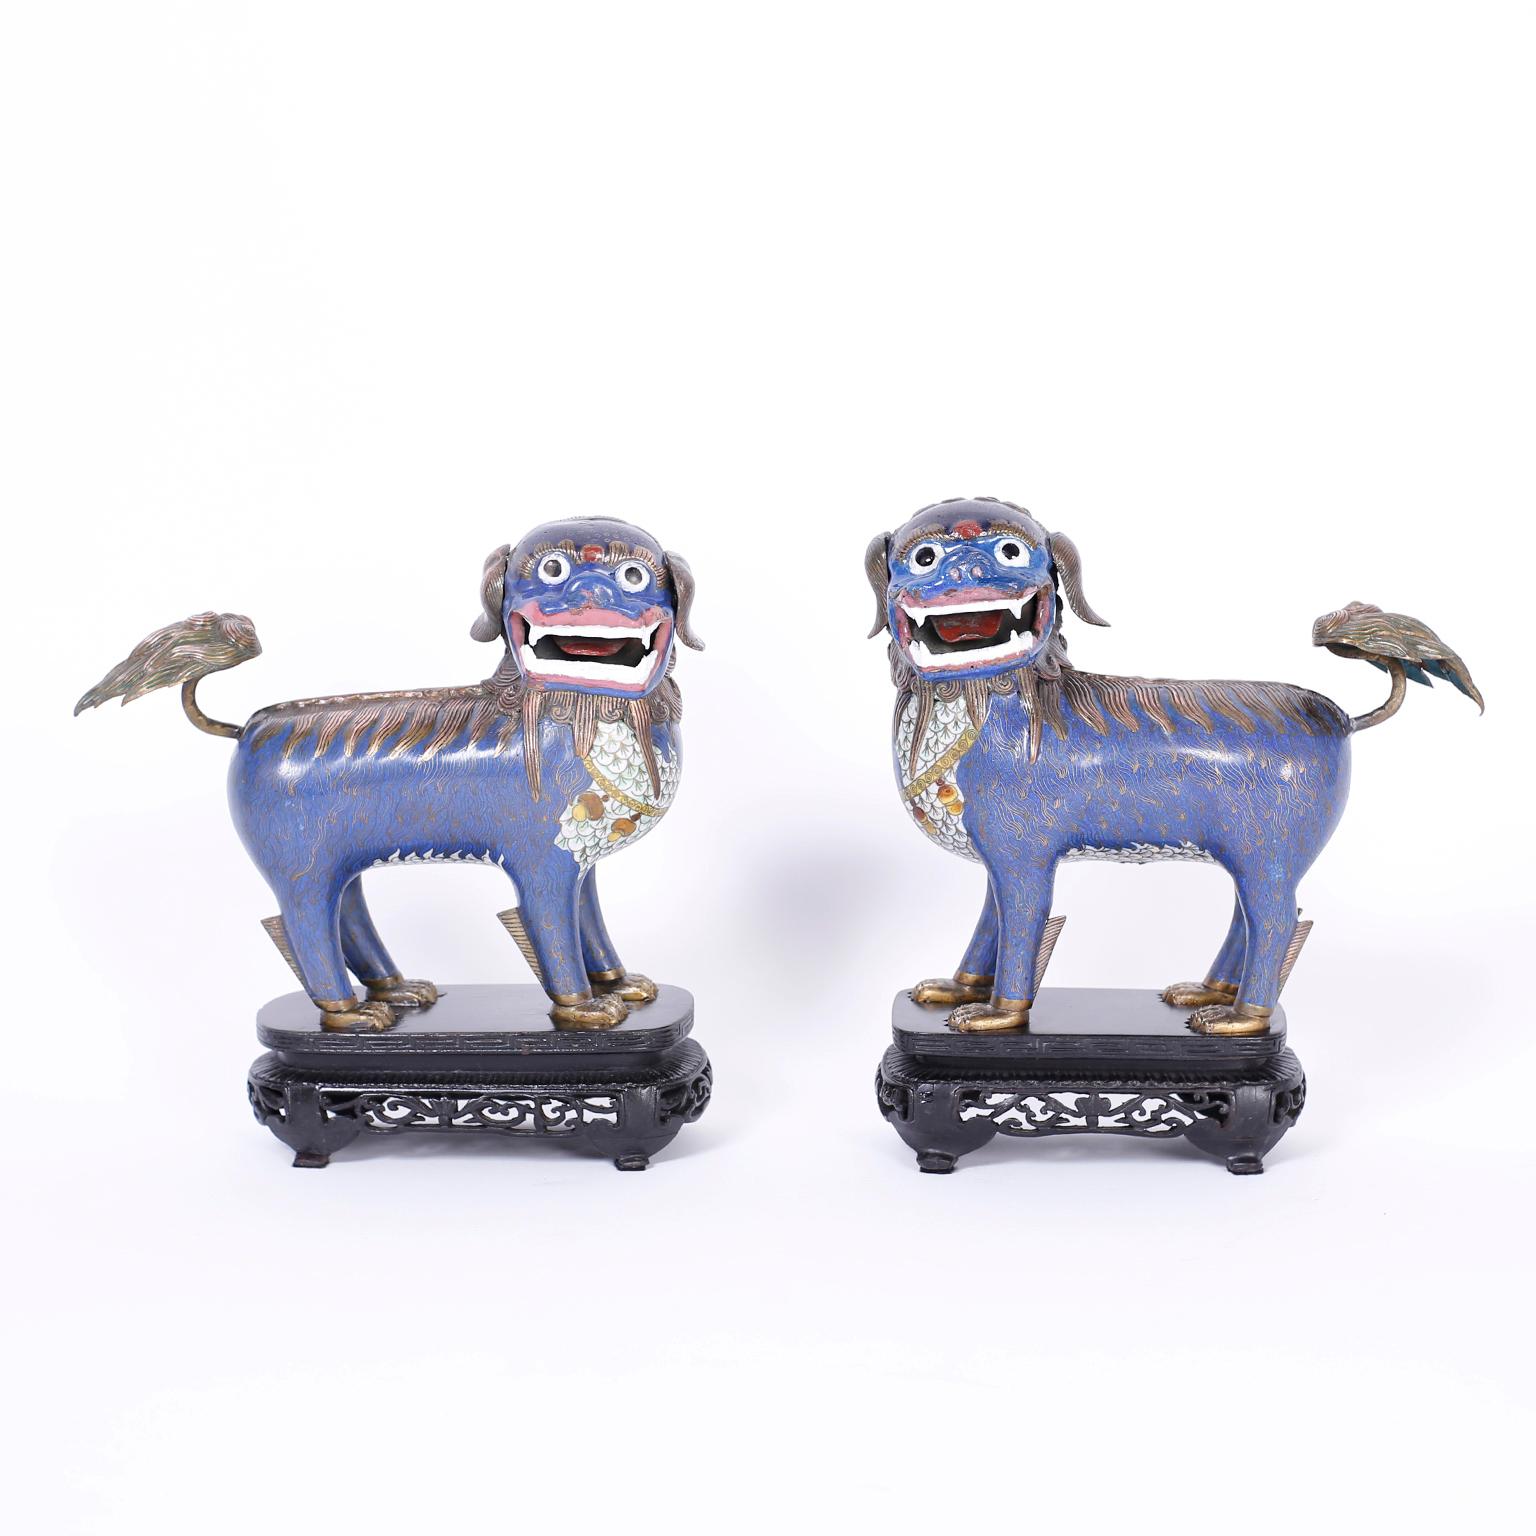 Paire inhabituelle de lions chinois en cloisonné à l'expression exagérée, aux caractéristiques de gros chat stylisé, au fond bleu séduisant, et présentés sur les bases originales sculptées et ébonisées.